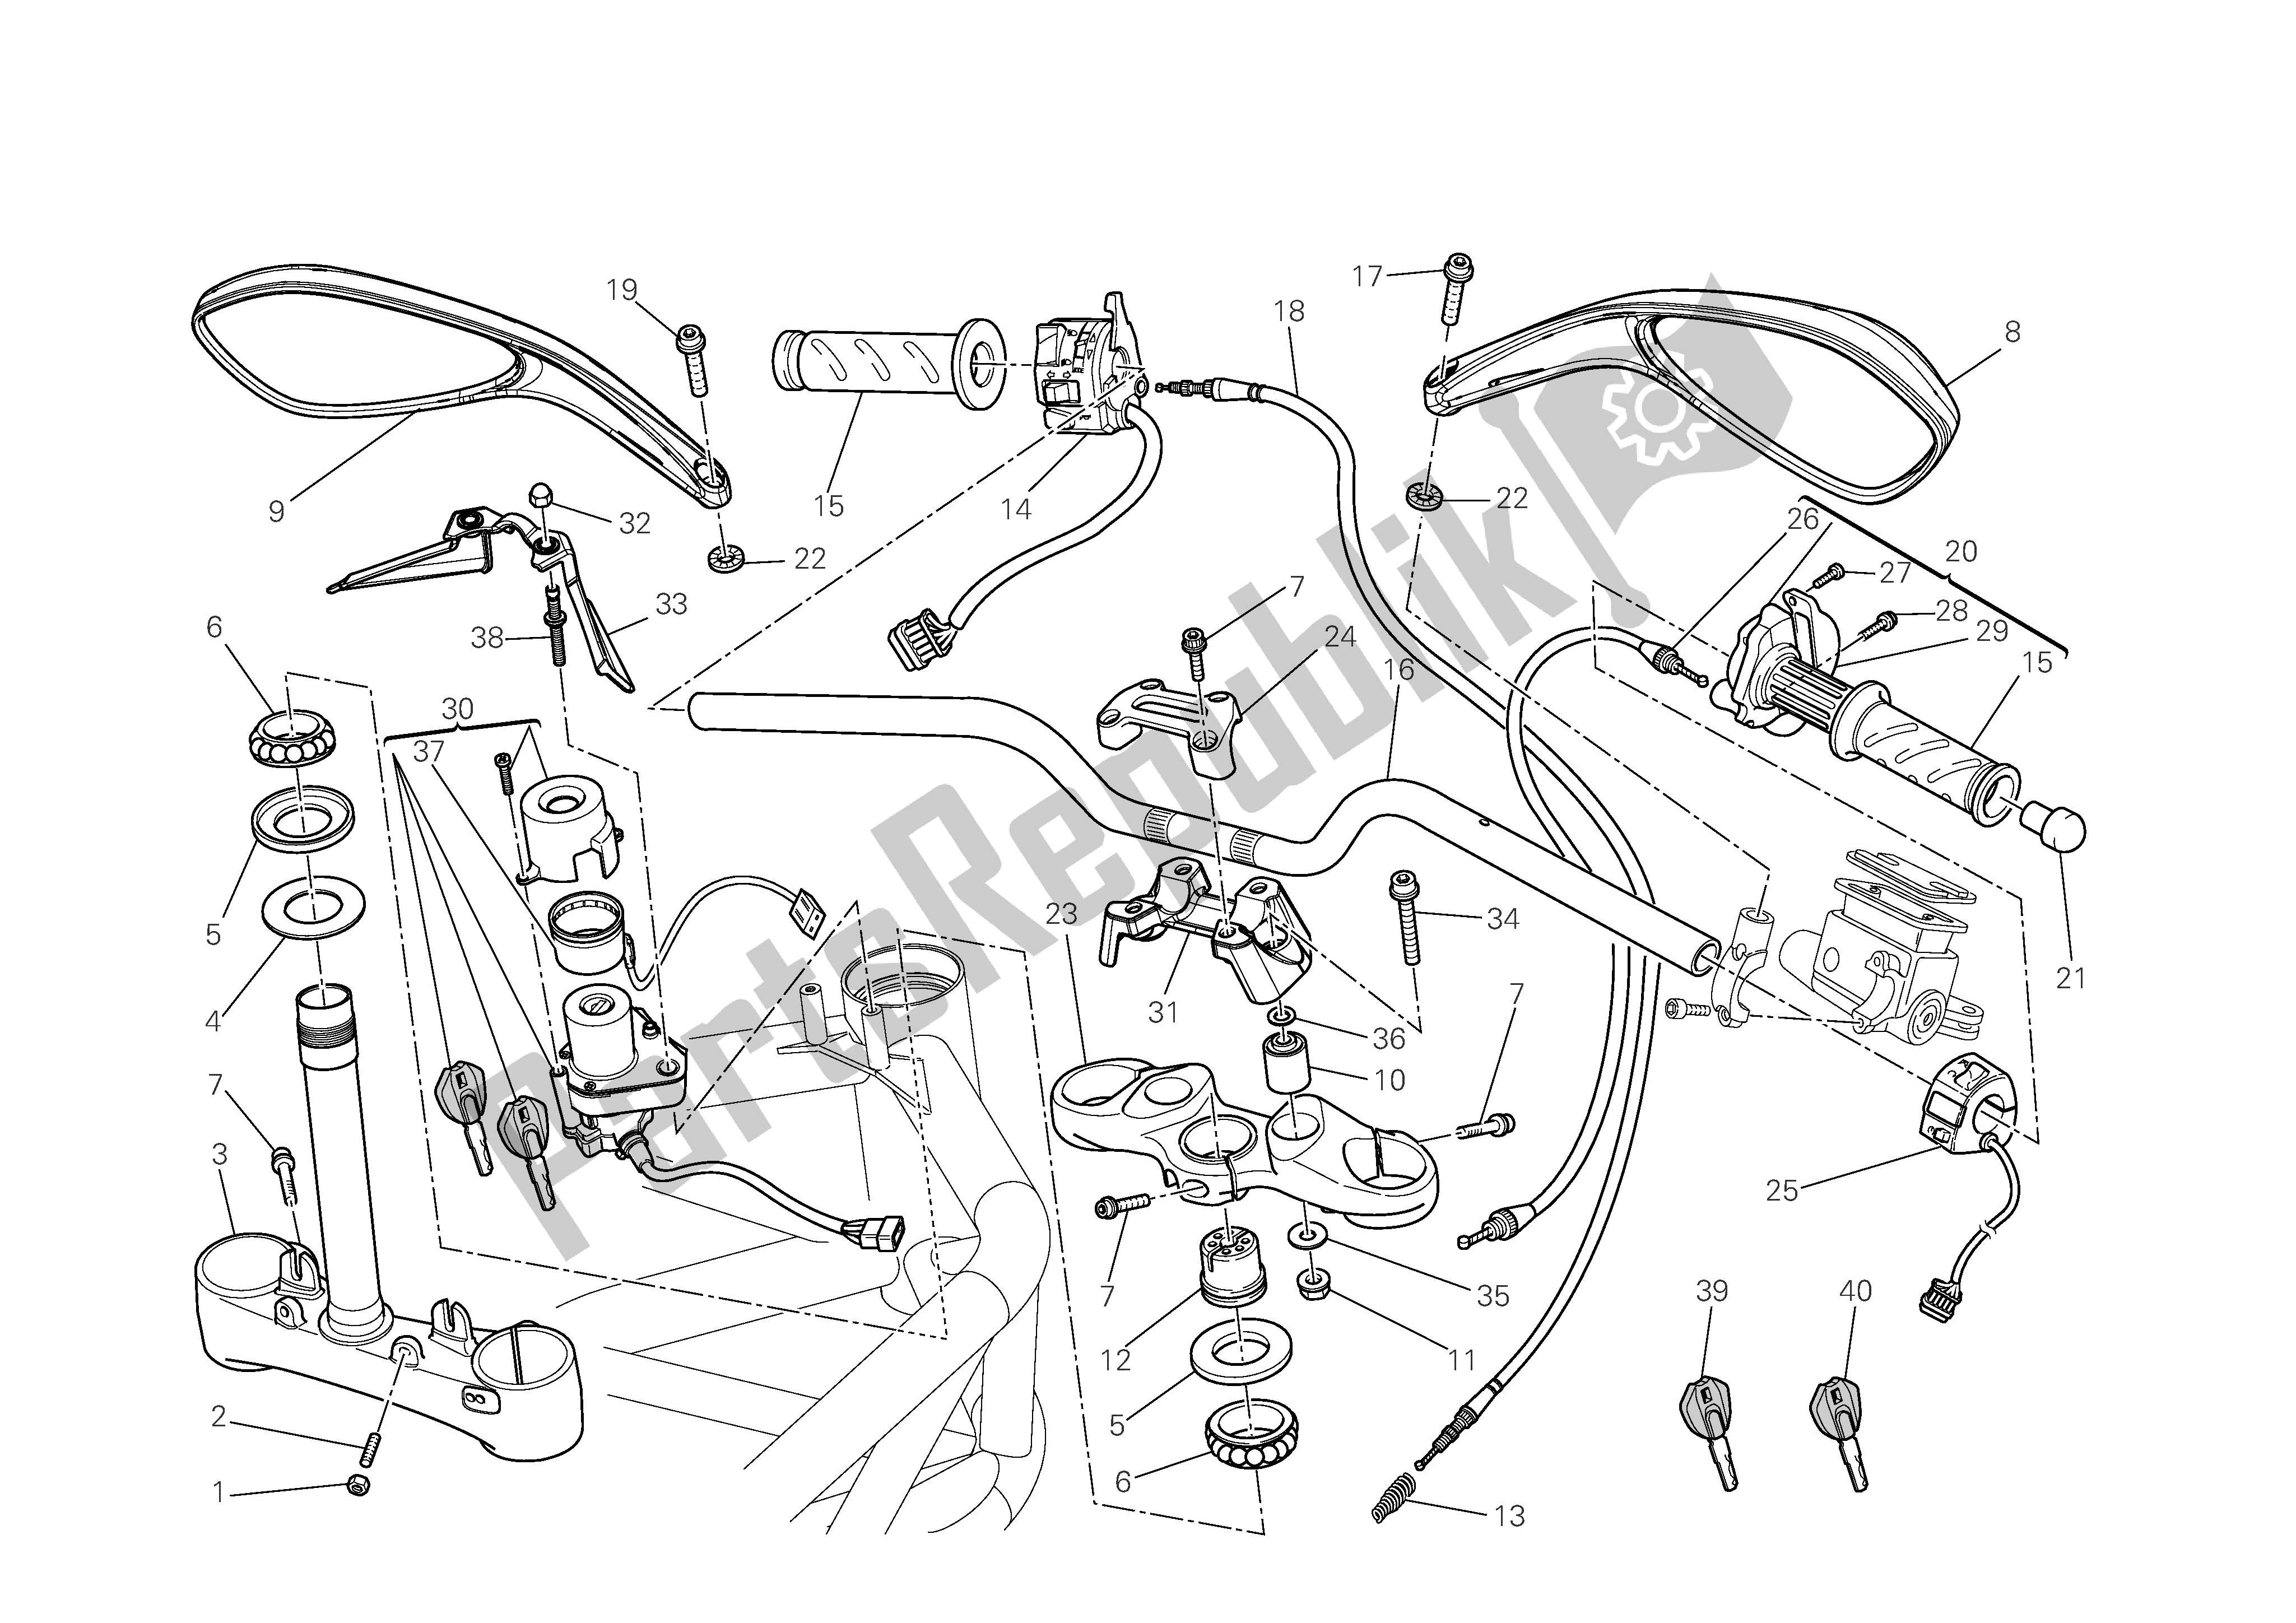 Todas las partes para Manillar Y Controles de Ducati Monster 696 2009